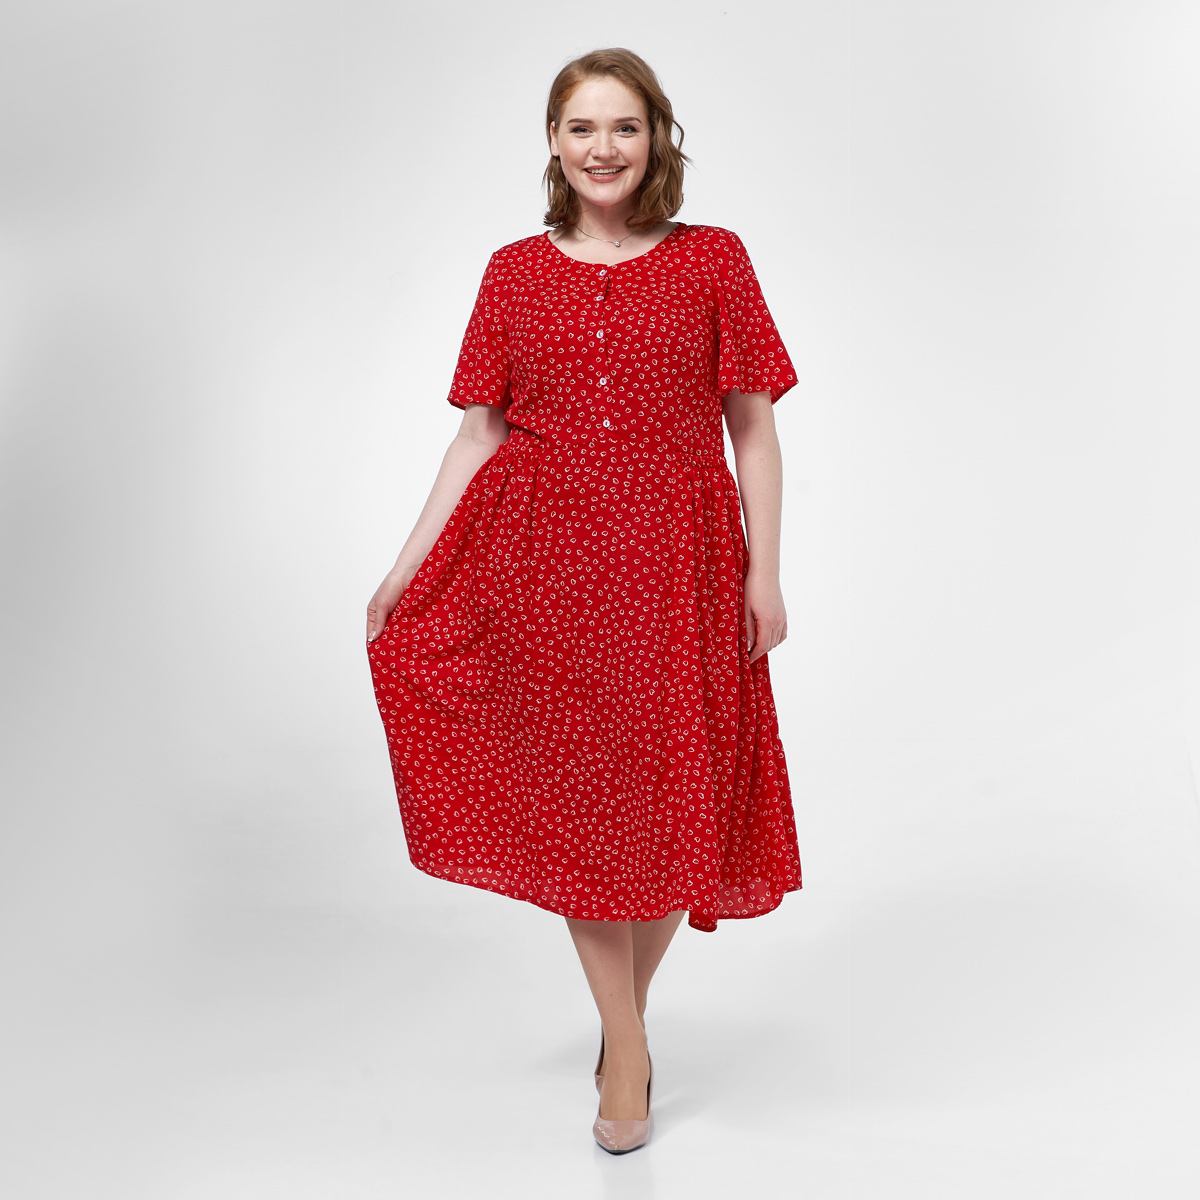 Платье, текстиль, красный